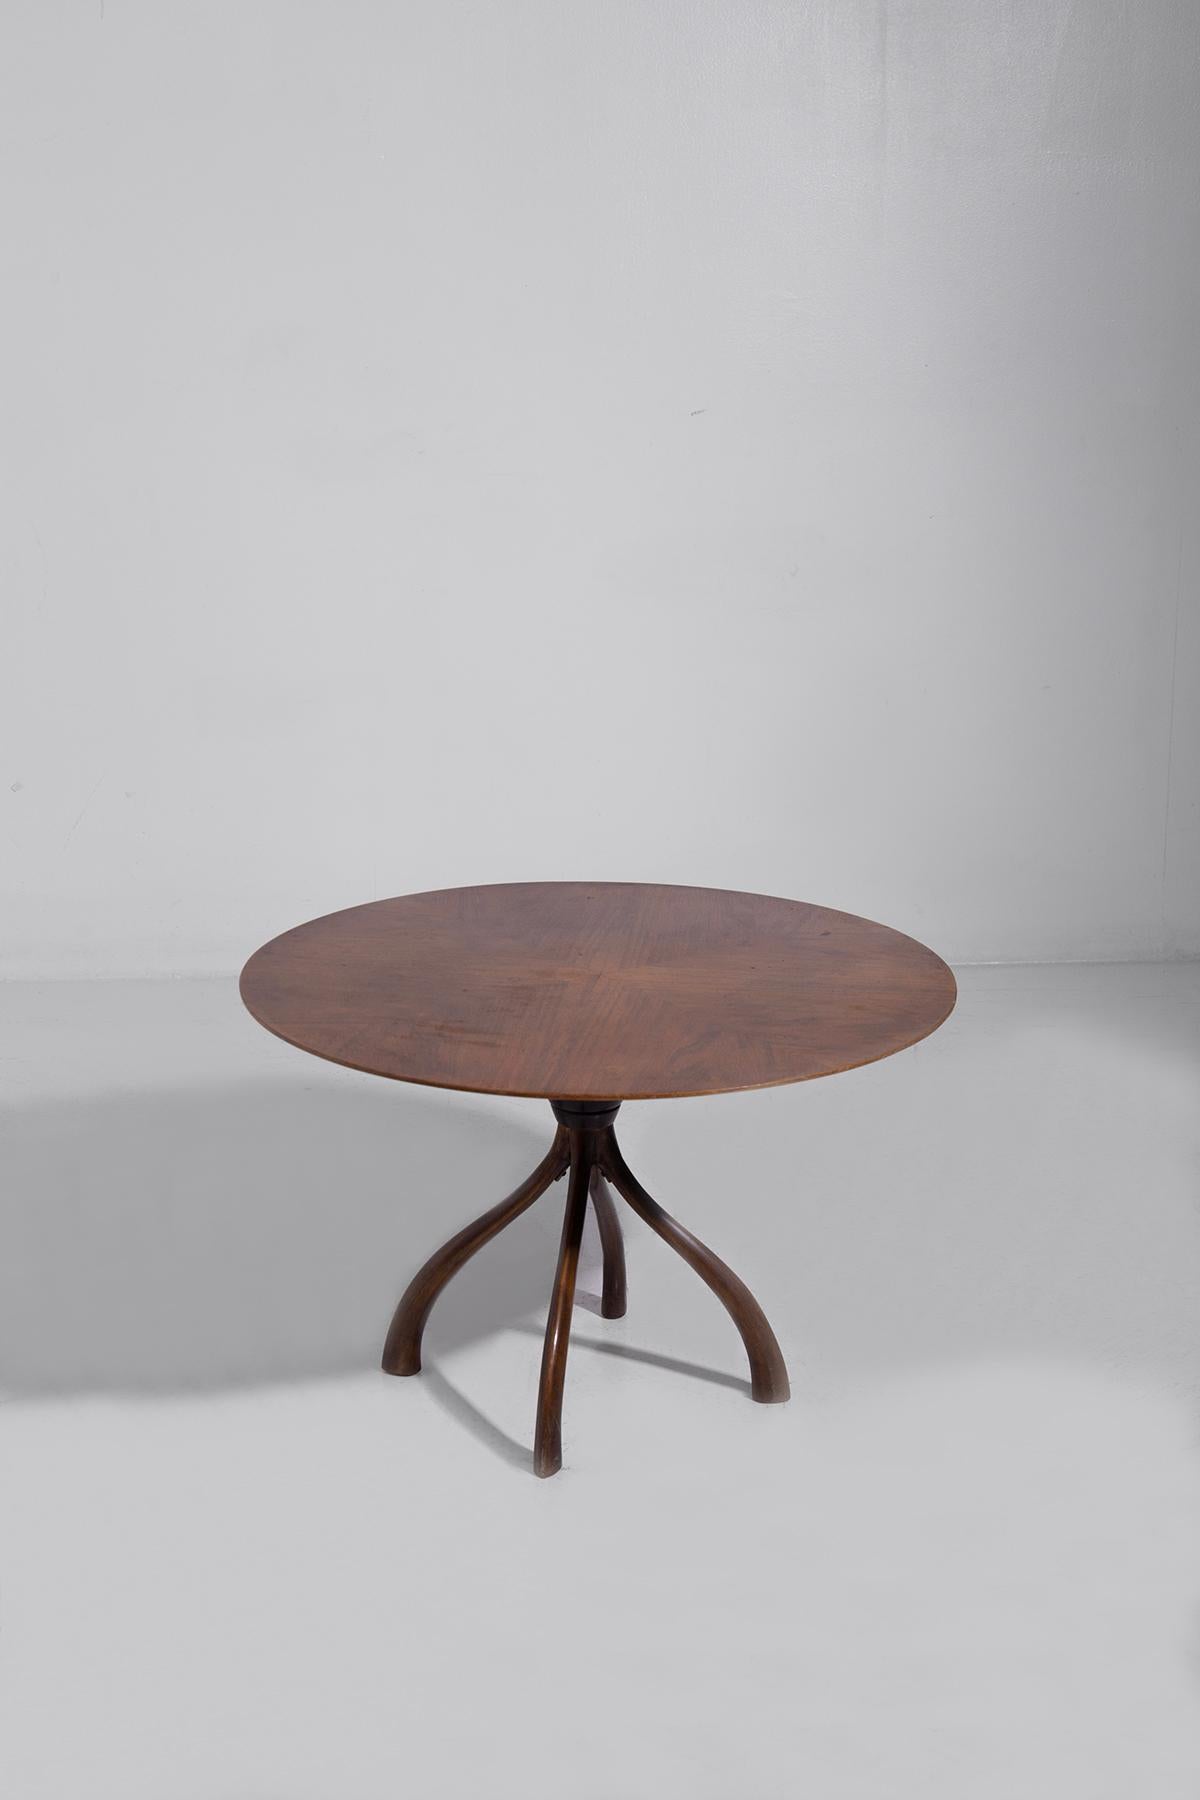 Découvrez l'élégance intemporelle des années 1950 avec cette table basse classique conçue par le célèbre artisan italien Cesare Lacca. Réalisée avec une attention méticuleuse aux détails, cette pièce exquise est un véritable témoignage du design